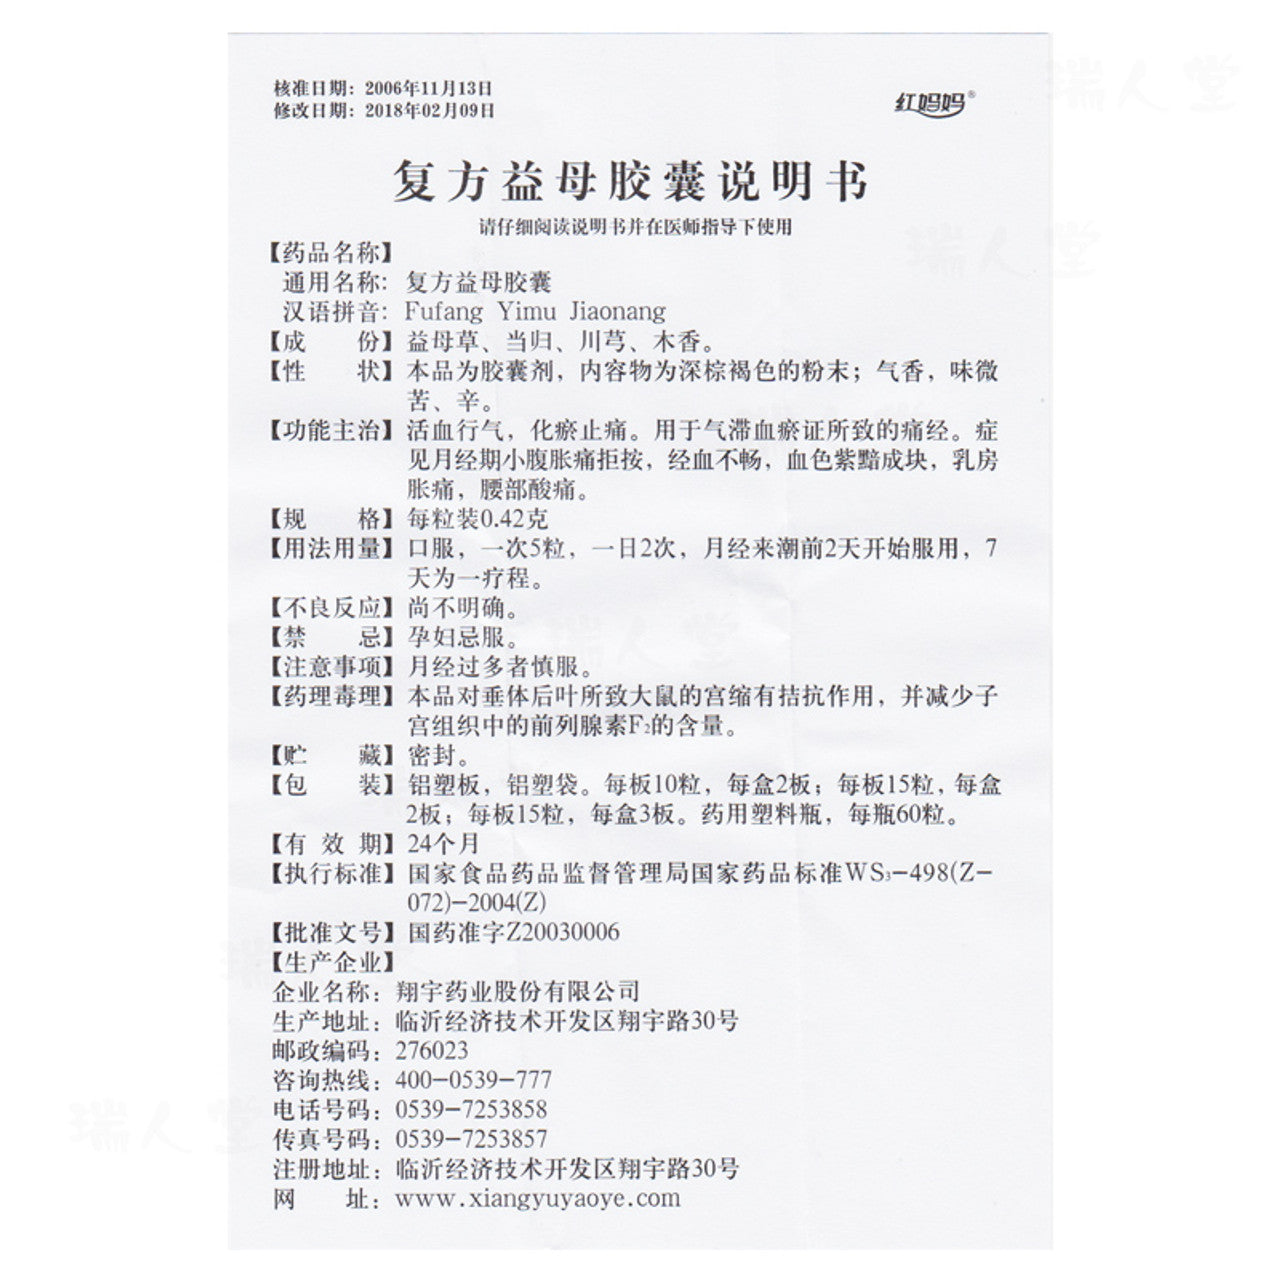 China Herb. Fufang Yimu Jiaonang / Fu Fang Yi Mu Jiao Nang / Fufang Yimu Capsules / Compound Yimu Capsules